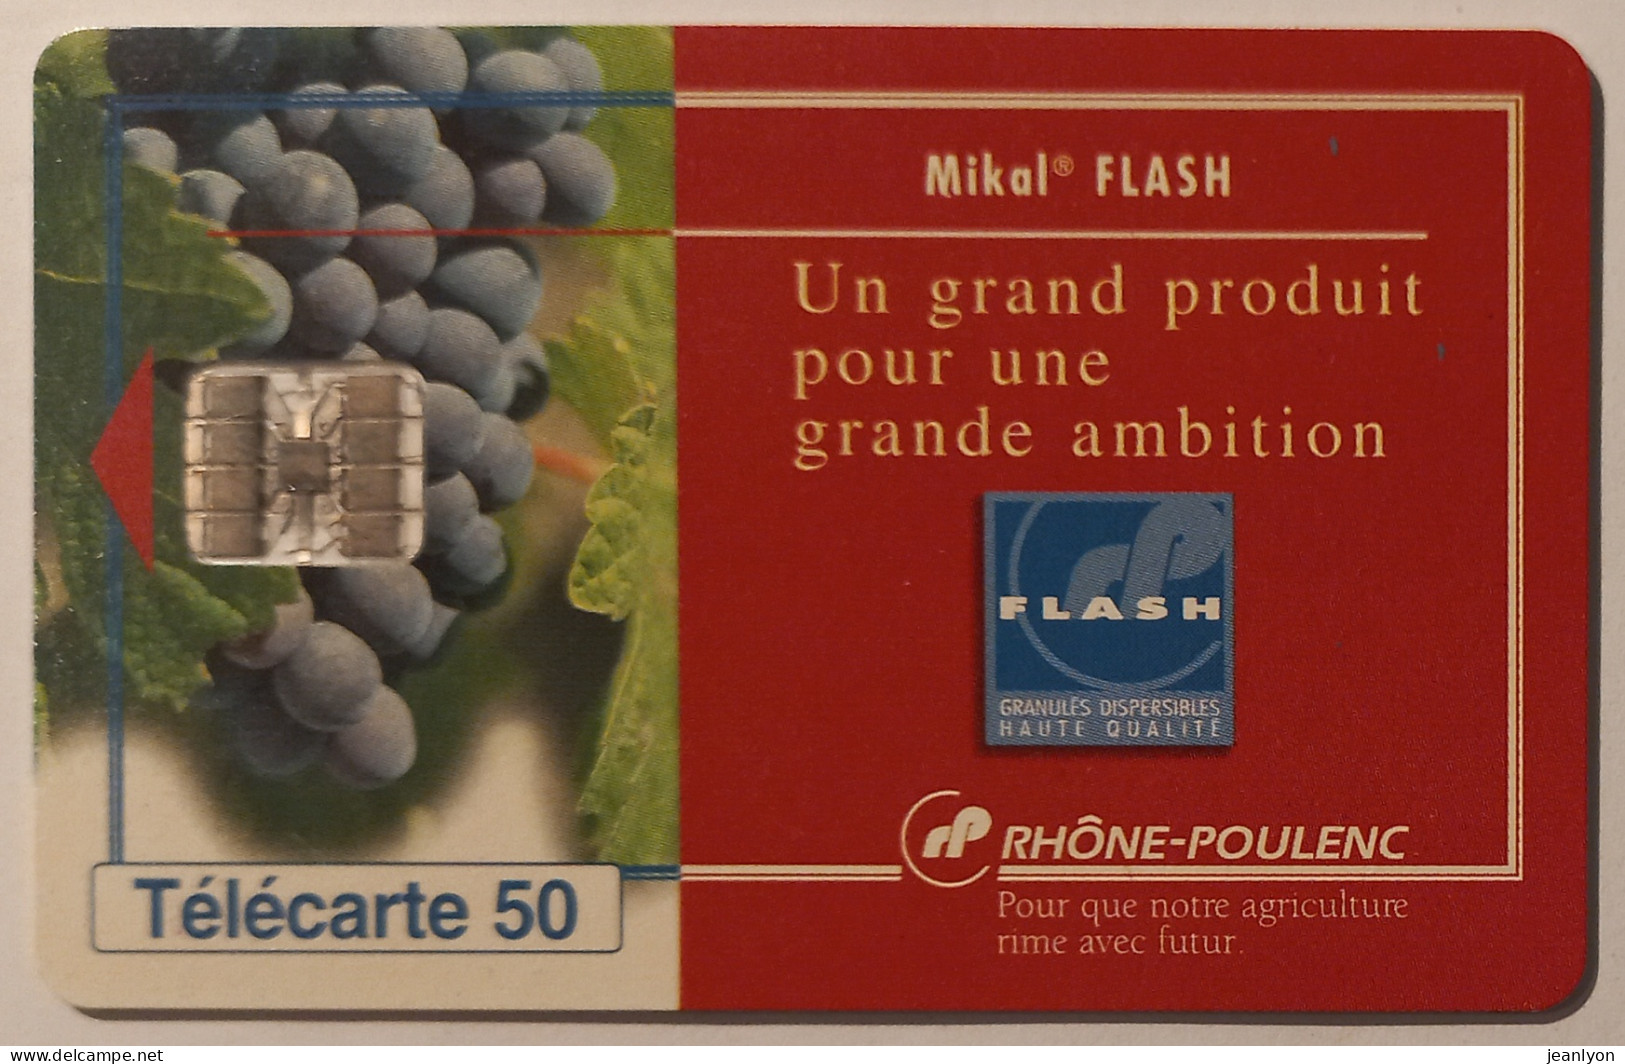 RHONE POULENC - MIKAL FLASH - Raisin / Vigne / Vin - Télécarte 50 Privée Publique - 50 Eenheden